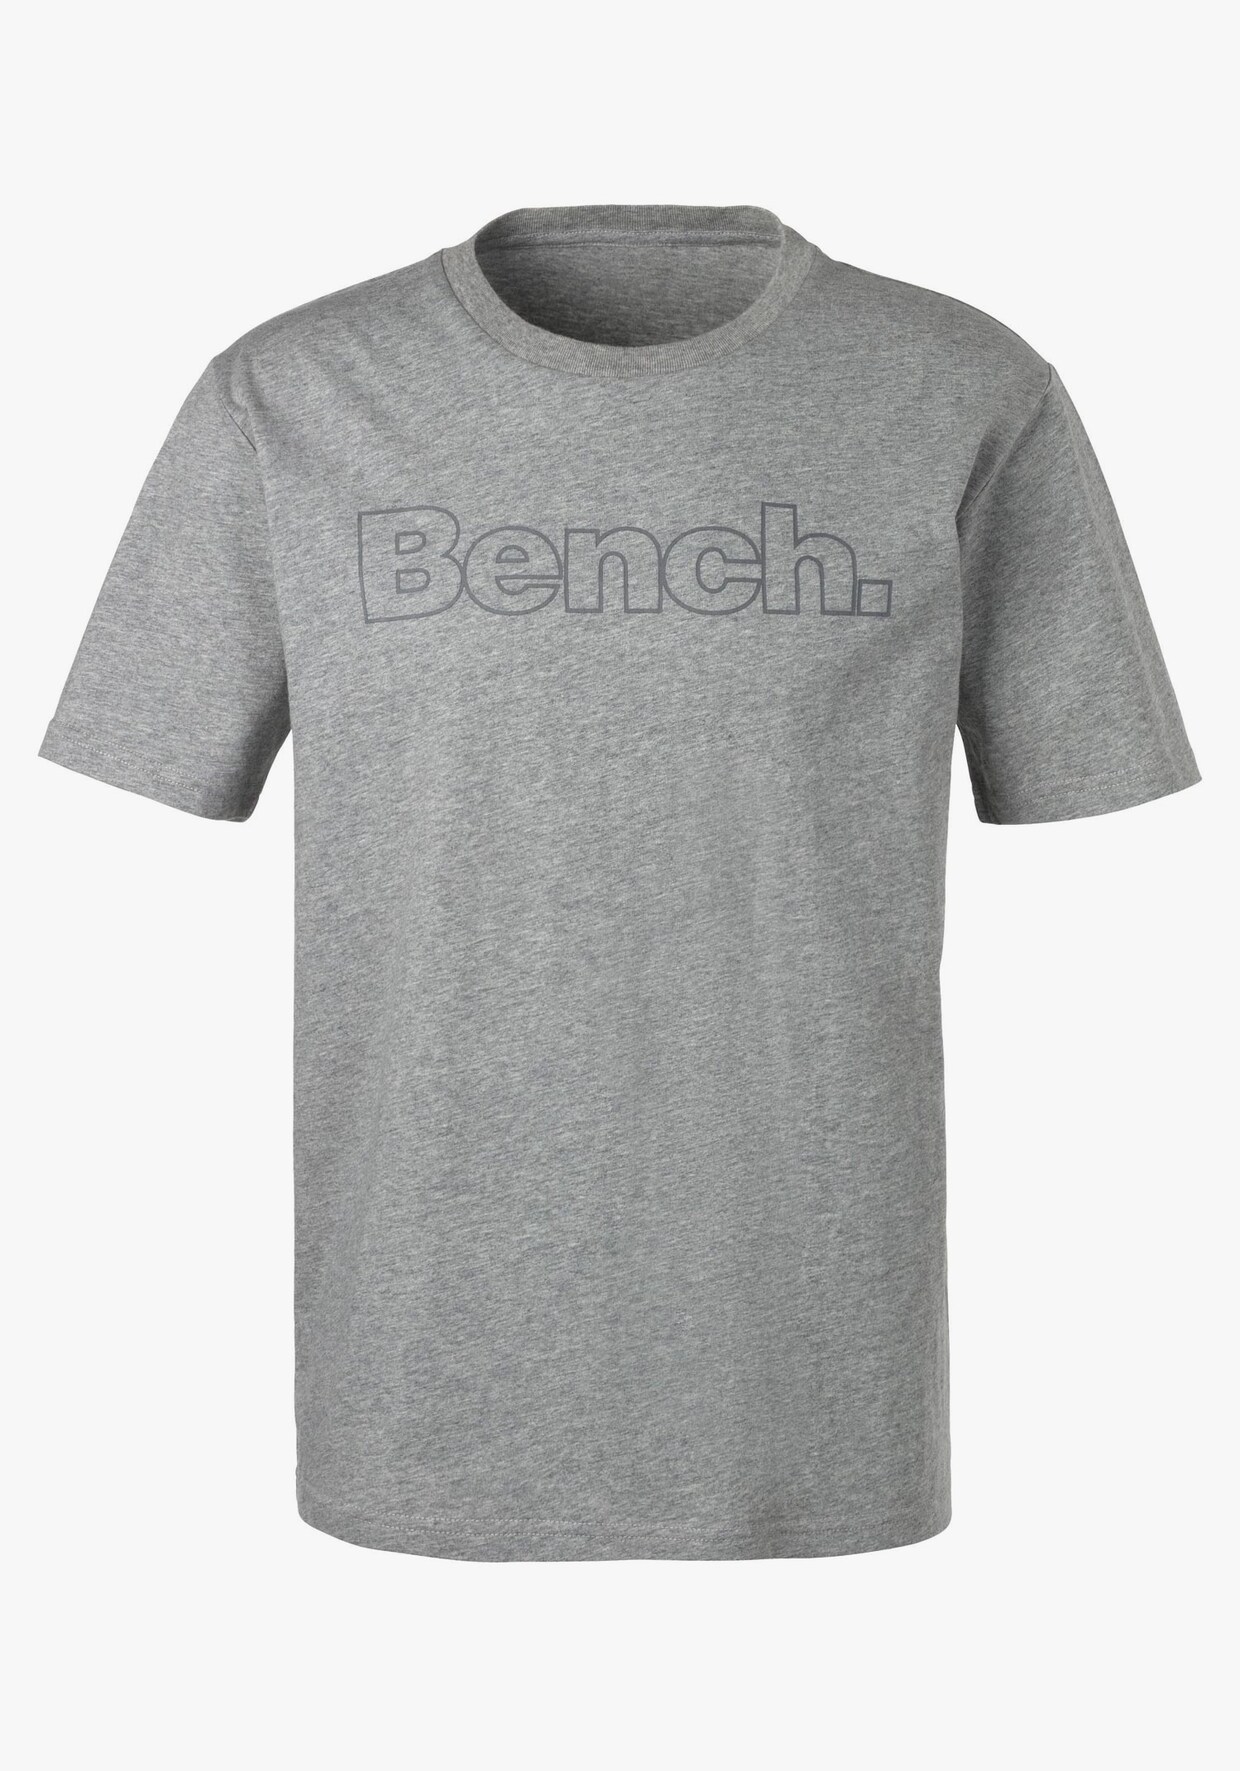 Bench. T-Shirt - grau-meliert, navy